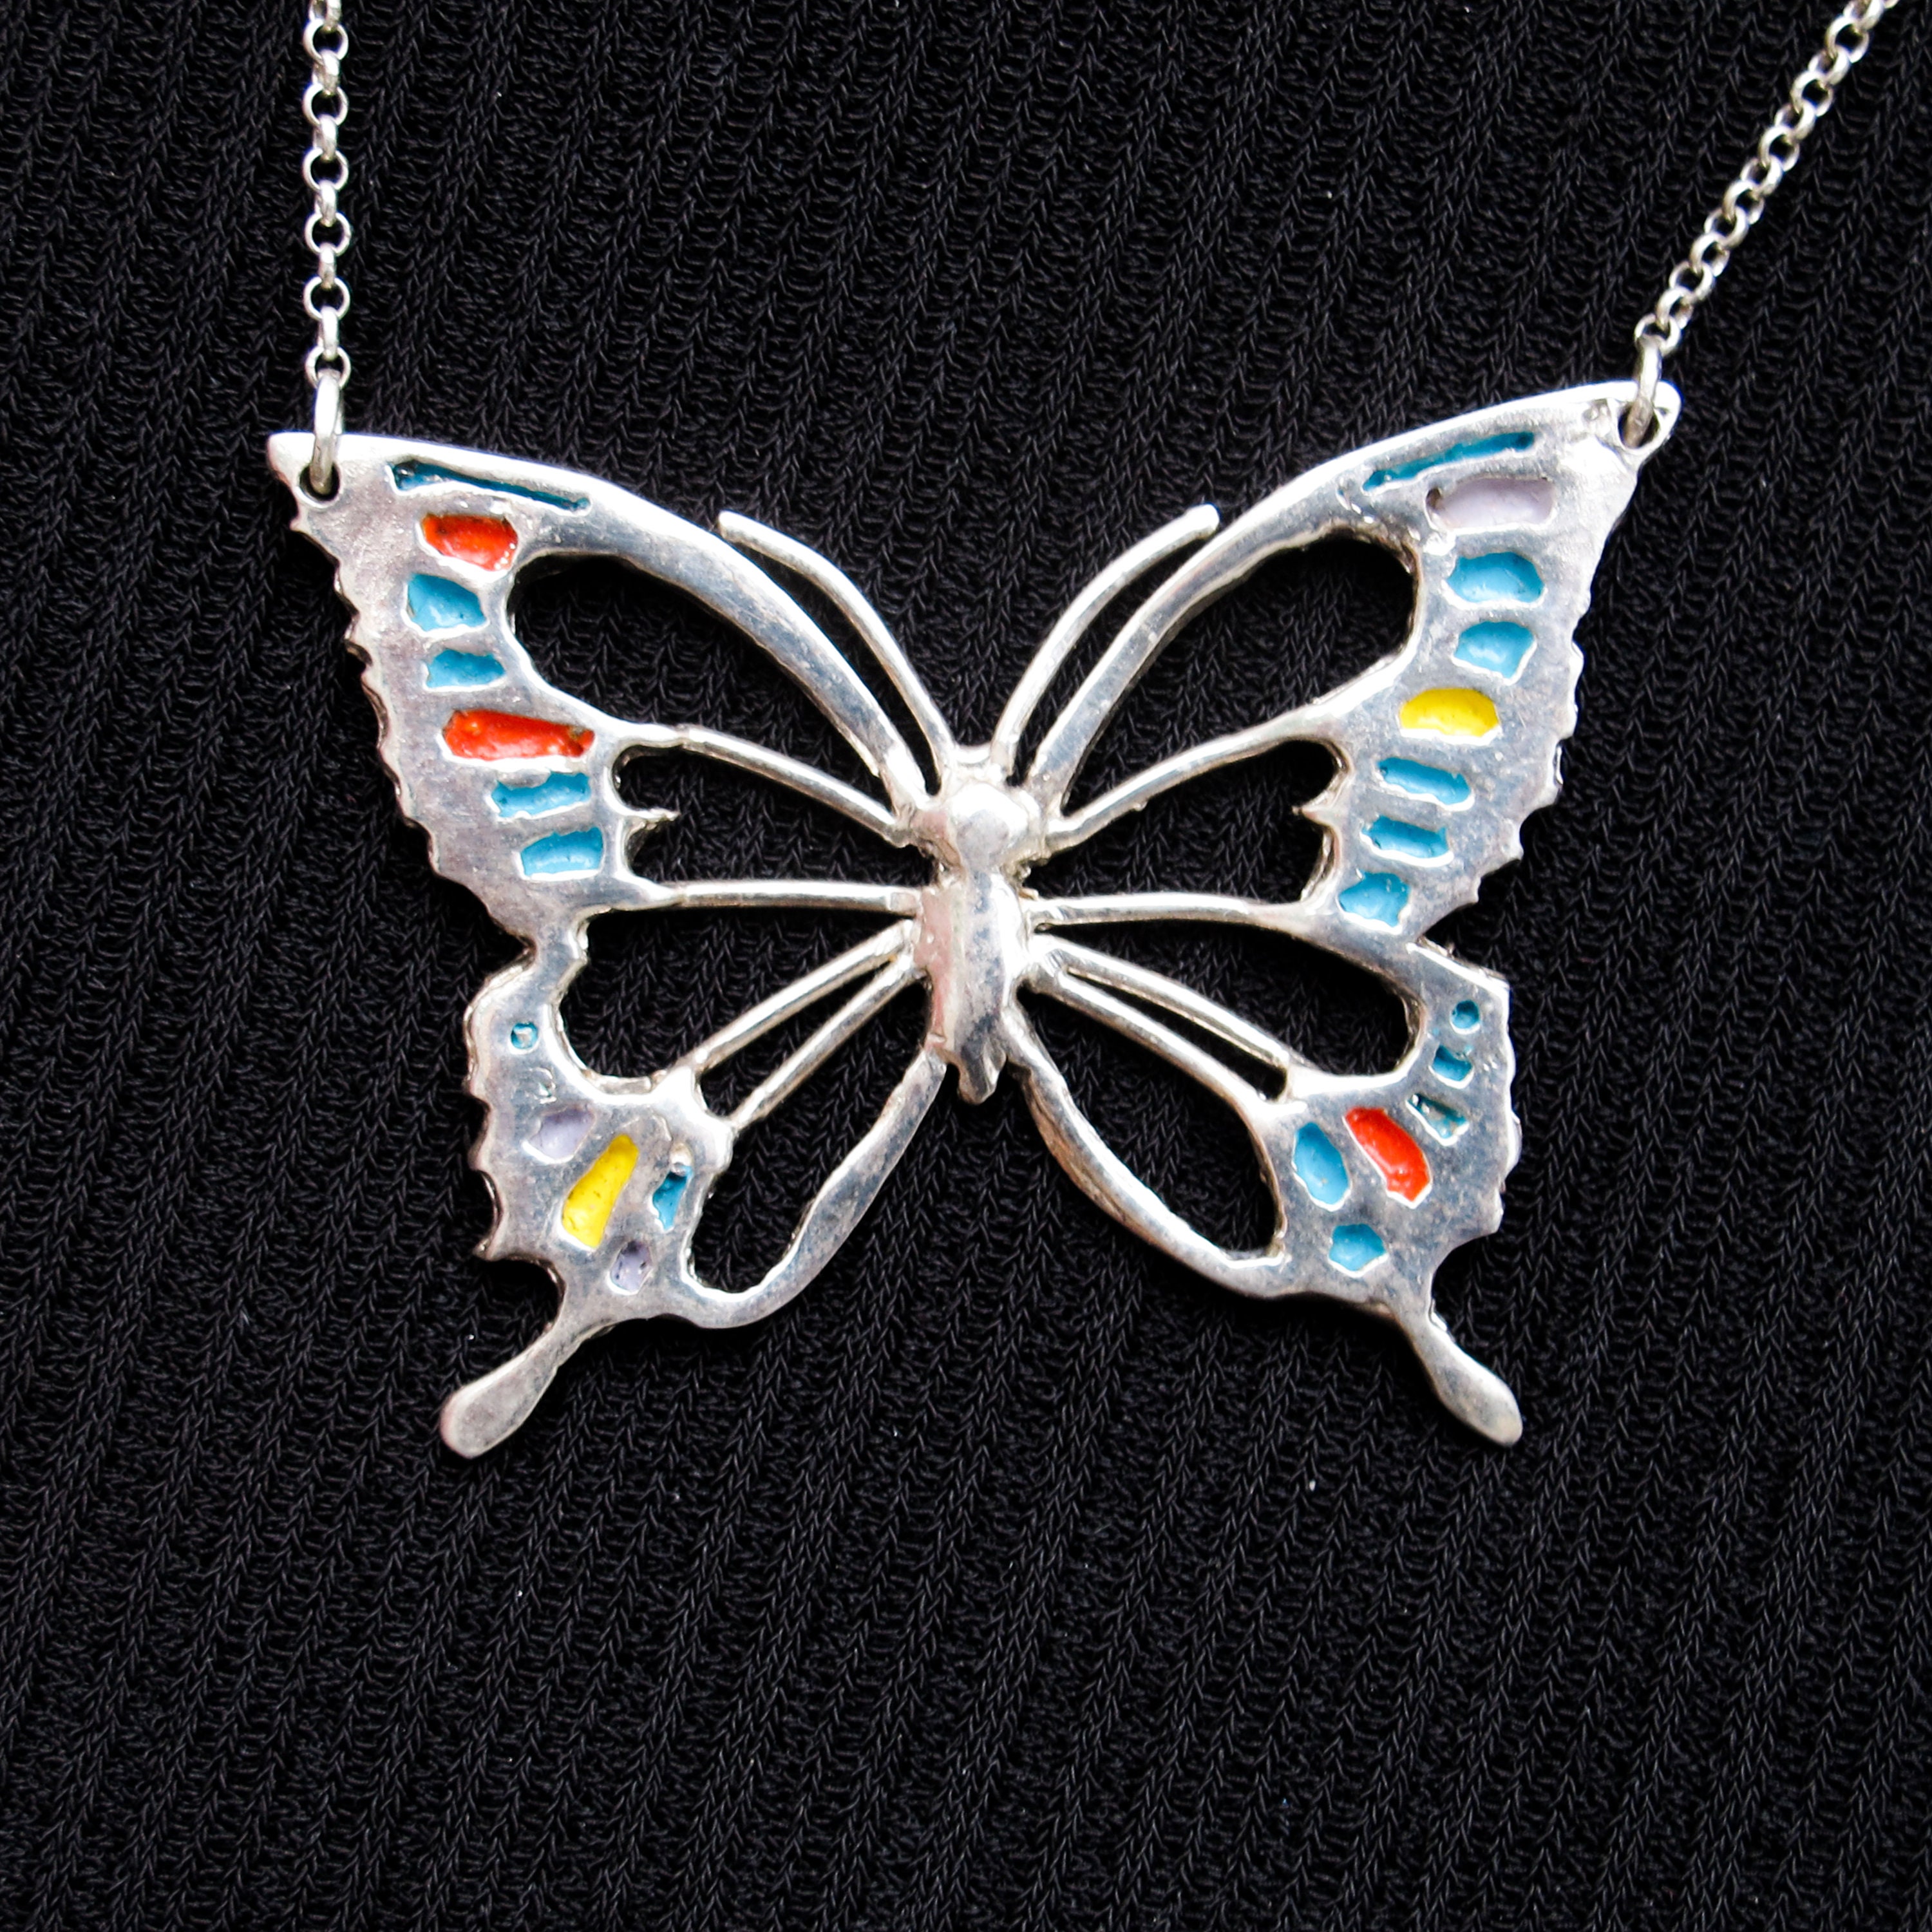 Oro 36 Piezas Dijes de Mariposas Colgante Mariposa Acrílico Plata Encantos Coloridos en Forma de Mariposa para Pendientes Pulseras Collares Fabricación Joyería DIY 